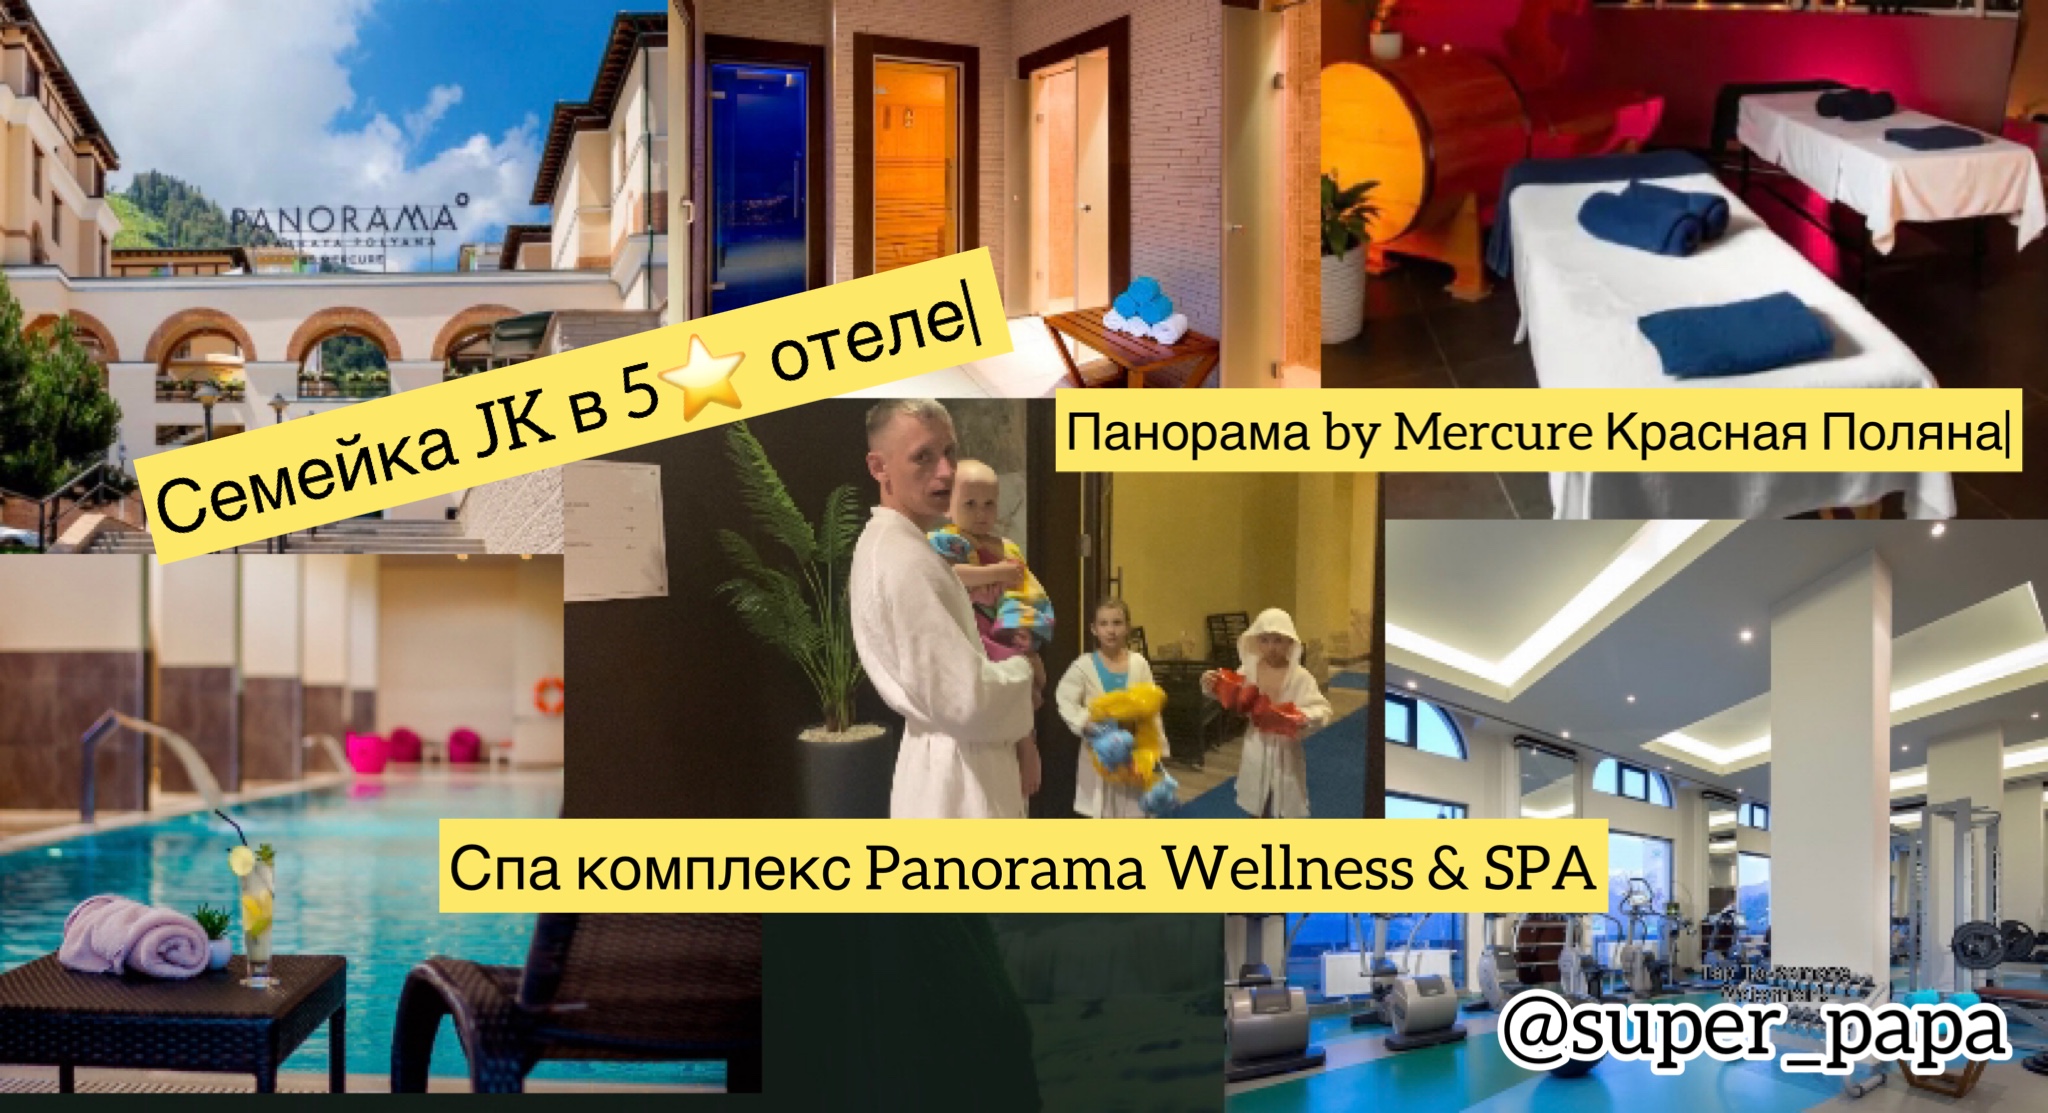 Семейка JK в 5⭐️ отеле| Панорама by Mercure Красная Поляна|Спа комплекс Panorama Wellness & SPA